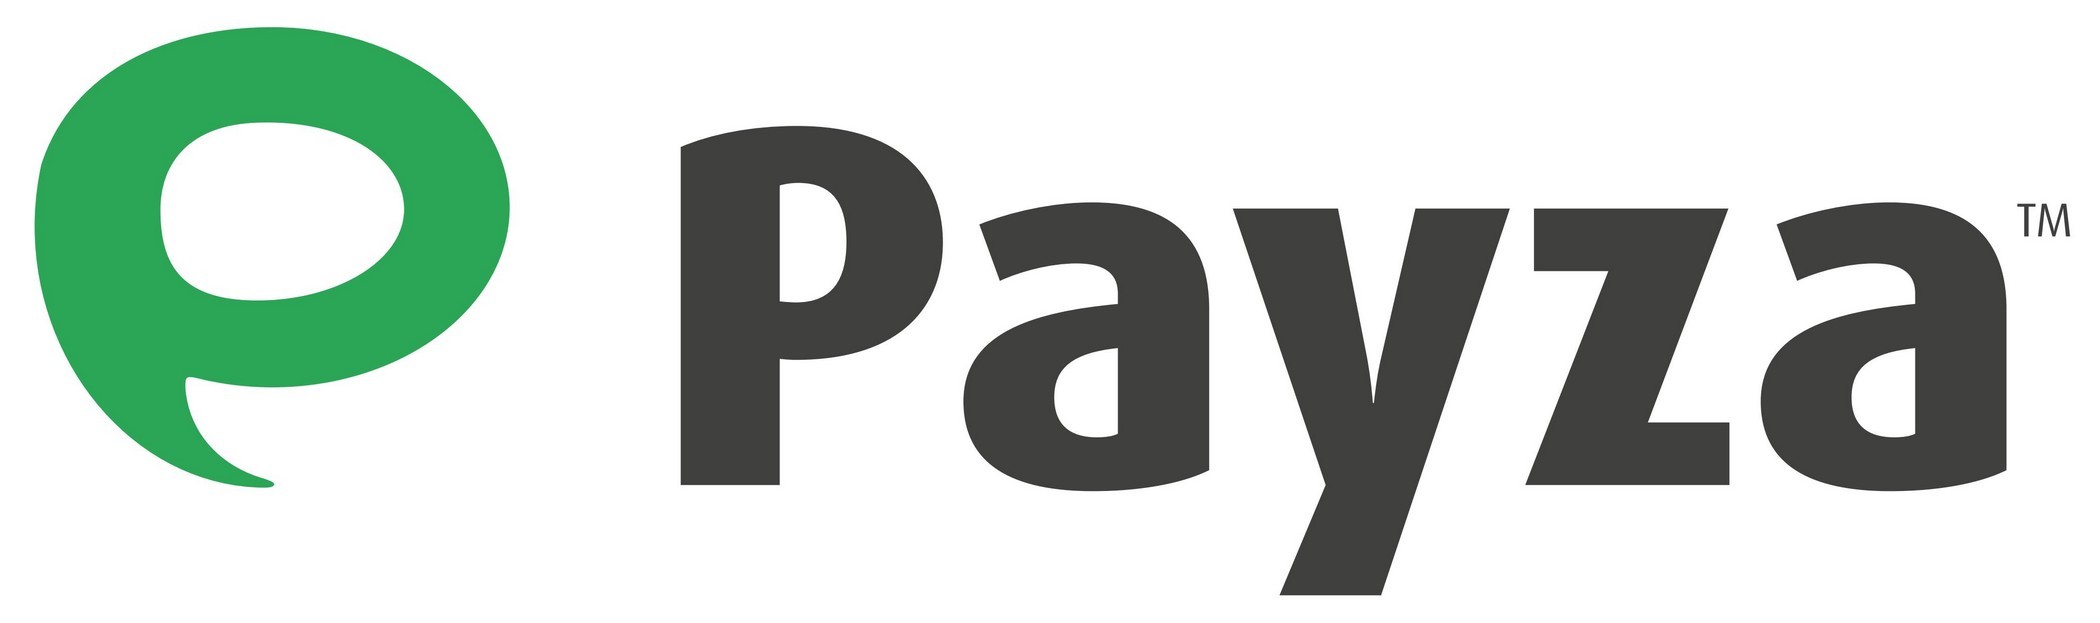 Payza Logo [EPS File]